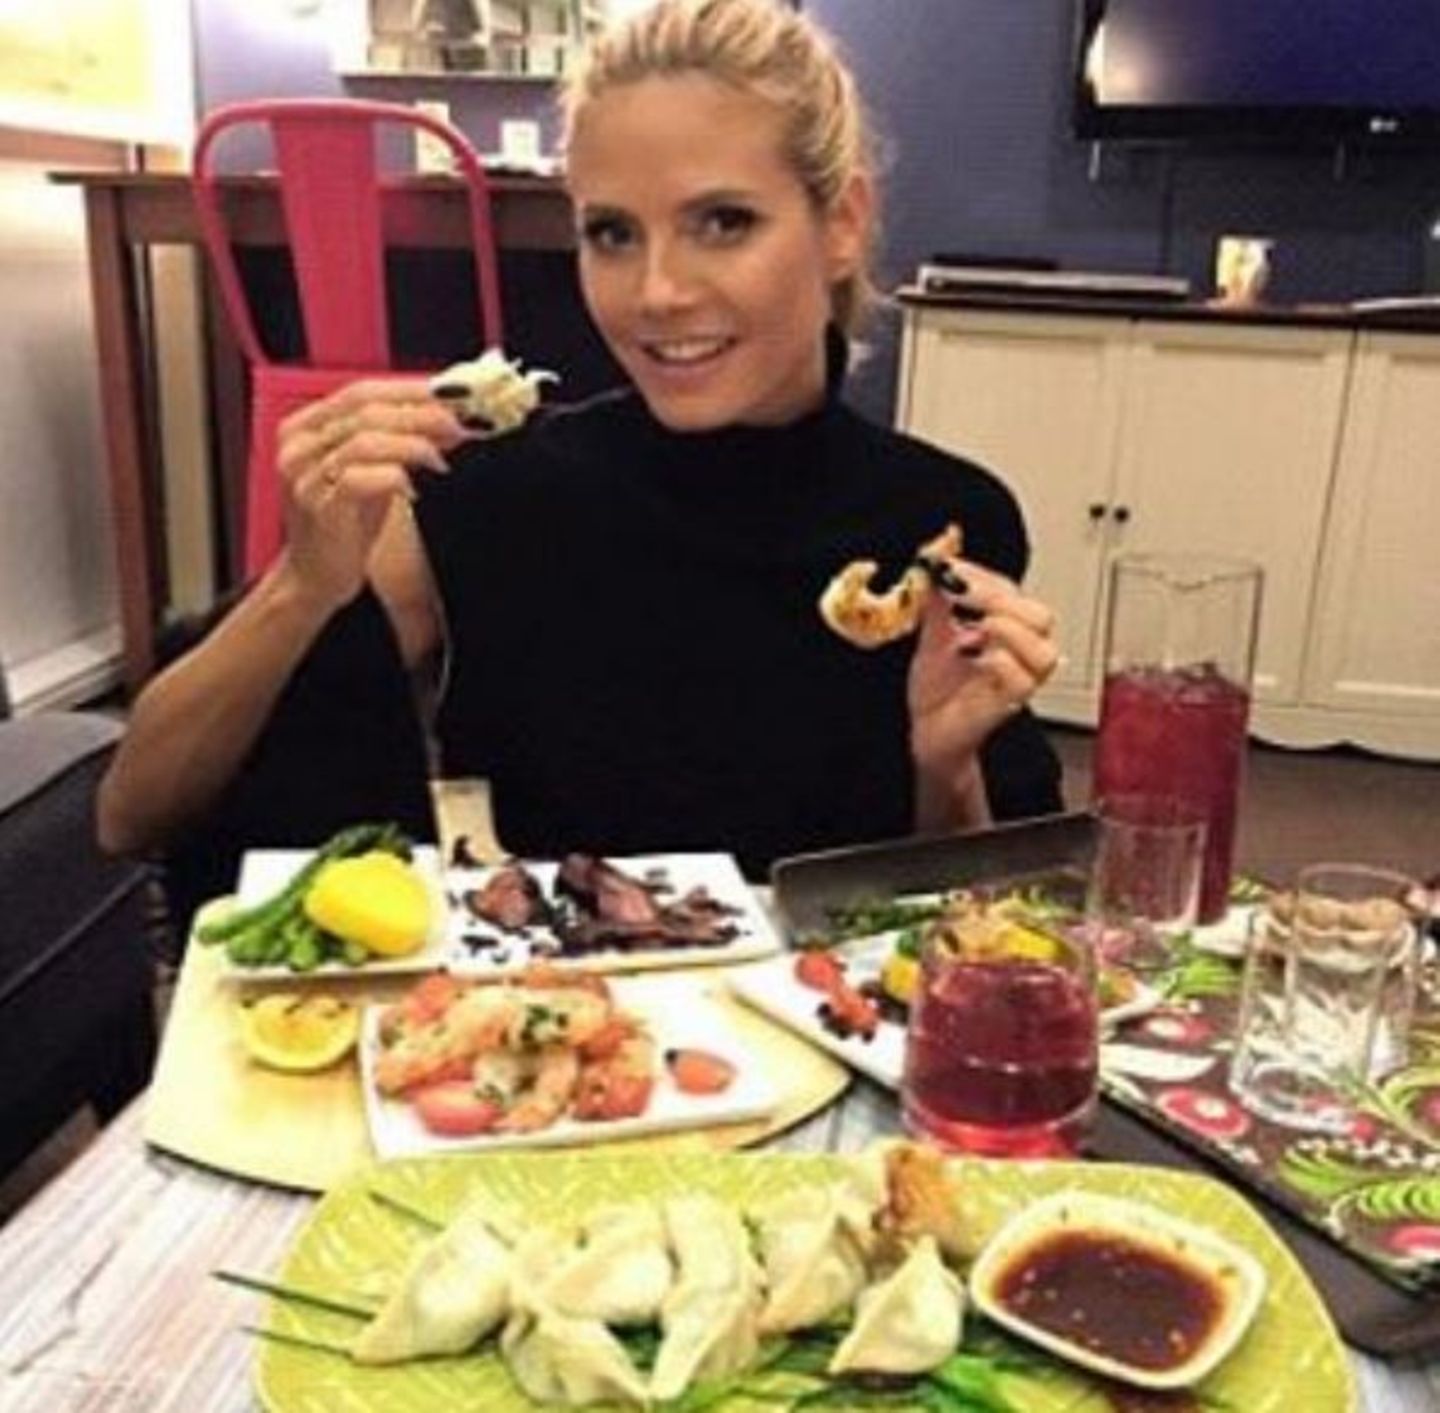 Stars + ihr Essen: Heidi Klum genießt Dim Sums, Garnelen und Carpacchio im asiatischen Stil.